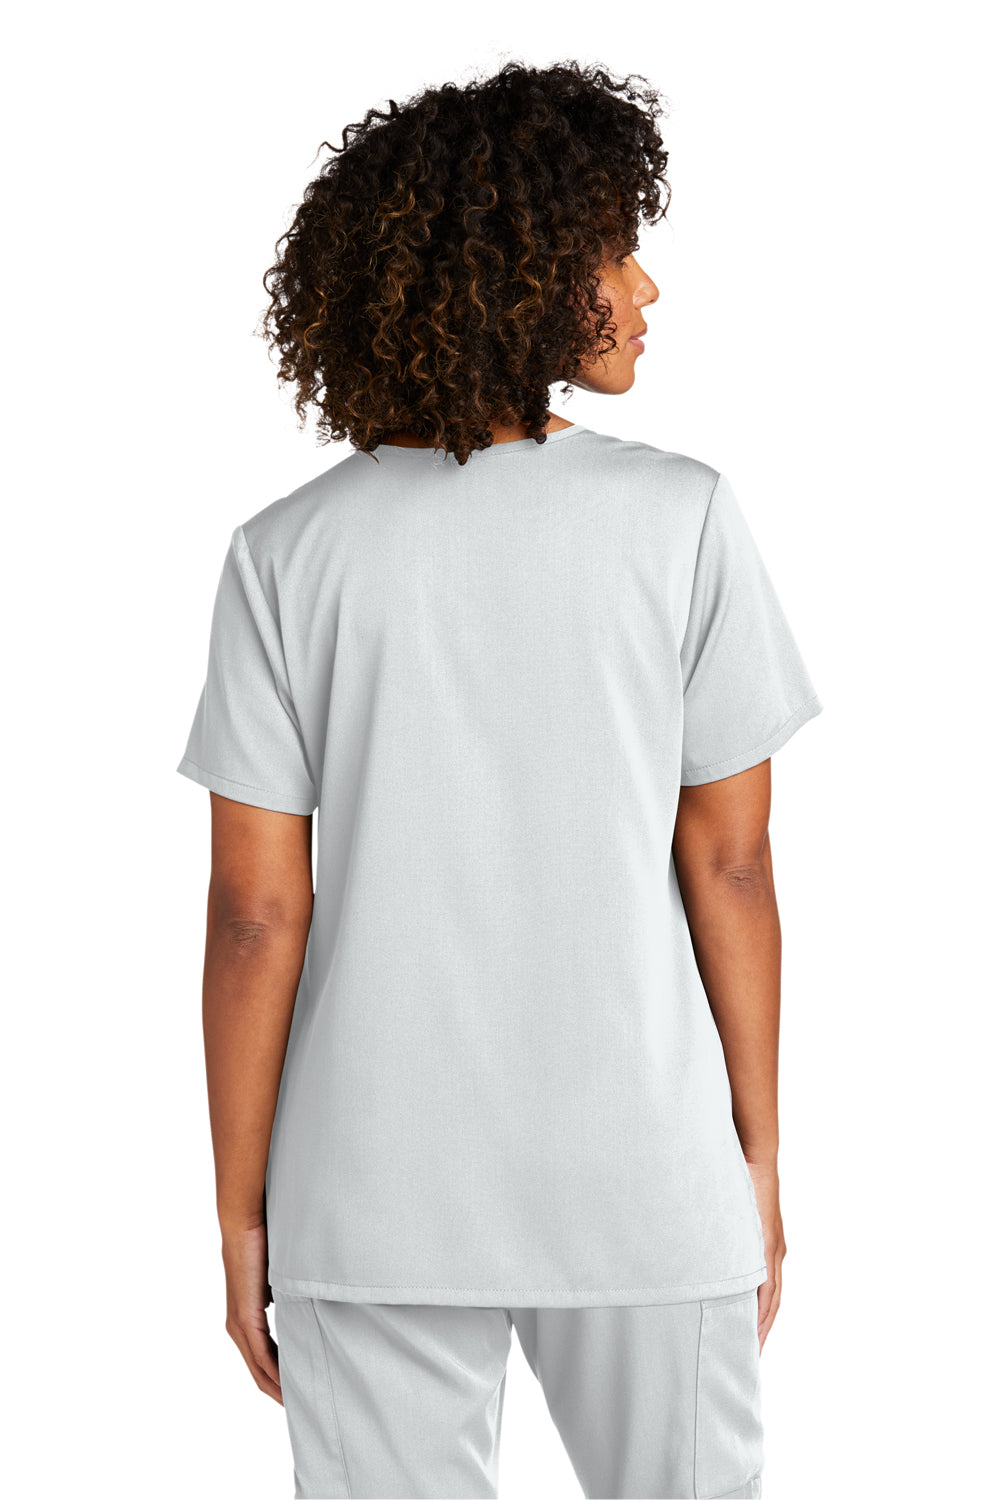 Wonderwink WW4168 Premiere Flex Short Sleeve V-Neck Shirt w/ Pockets White Back